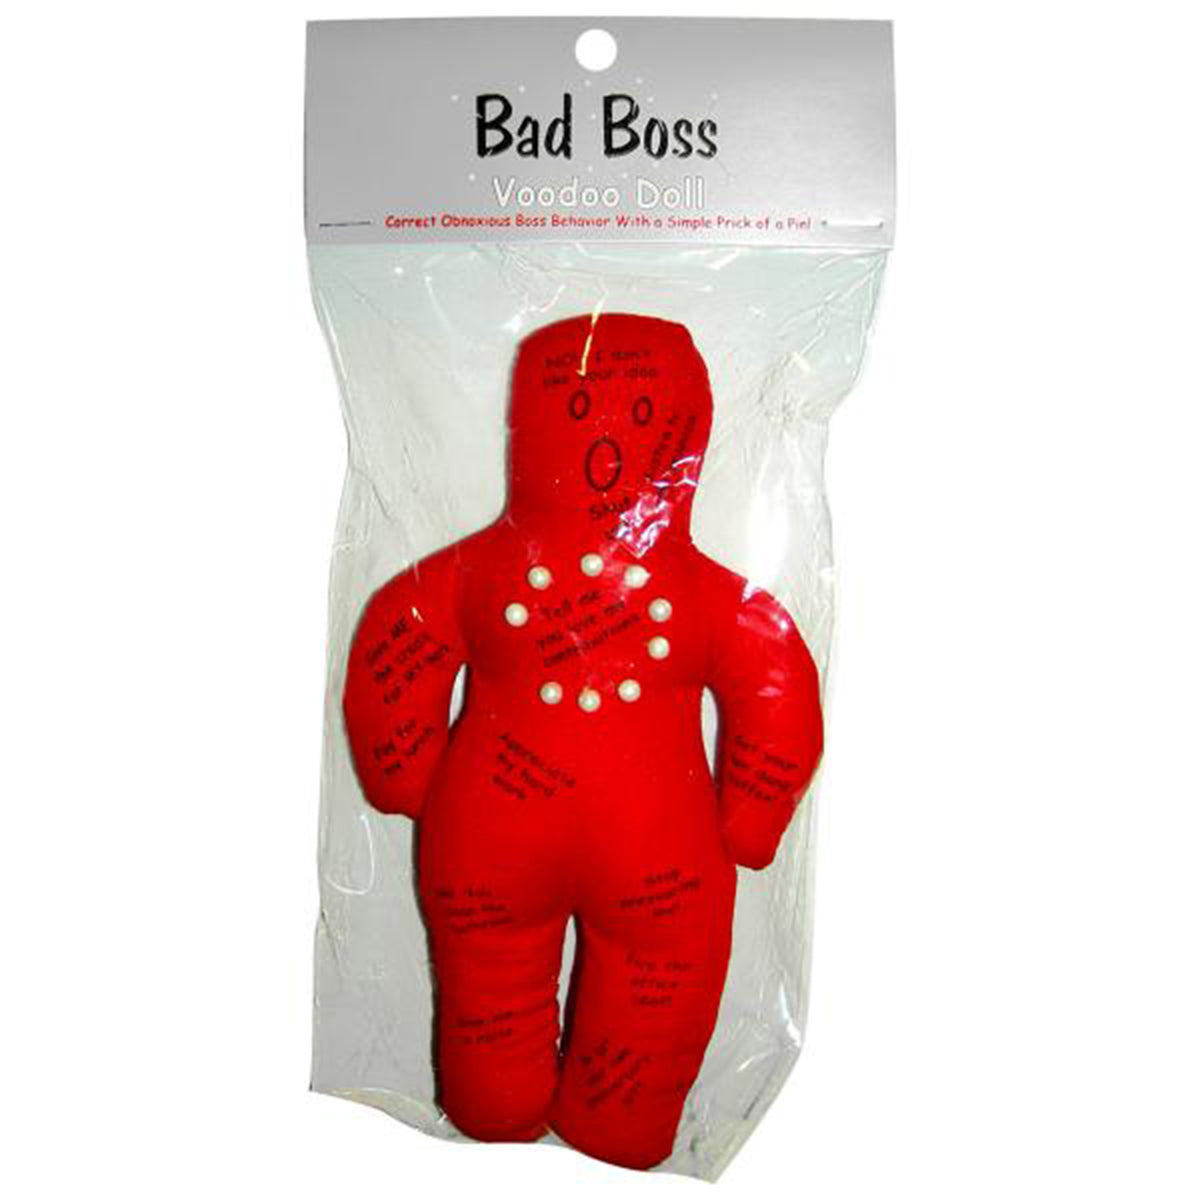 Bad Boss Voodoo Doll